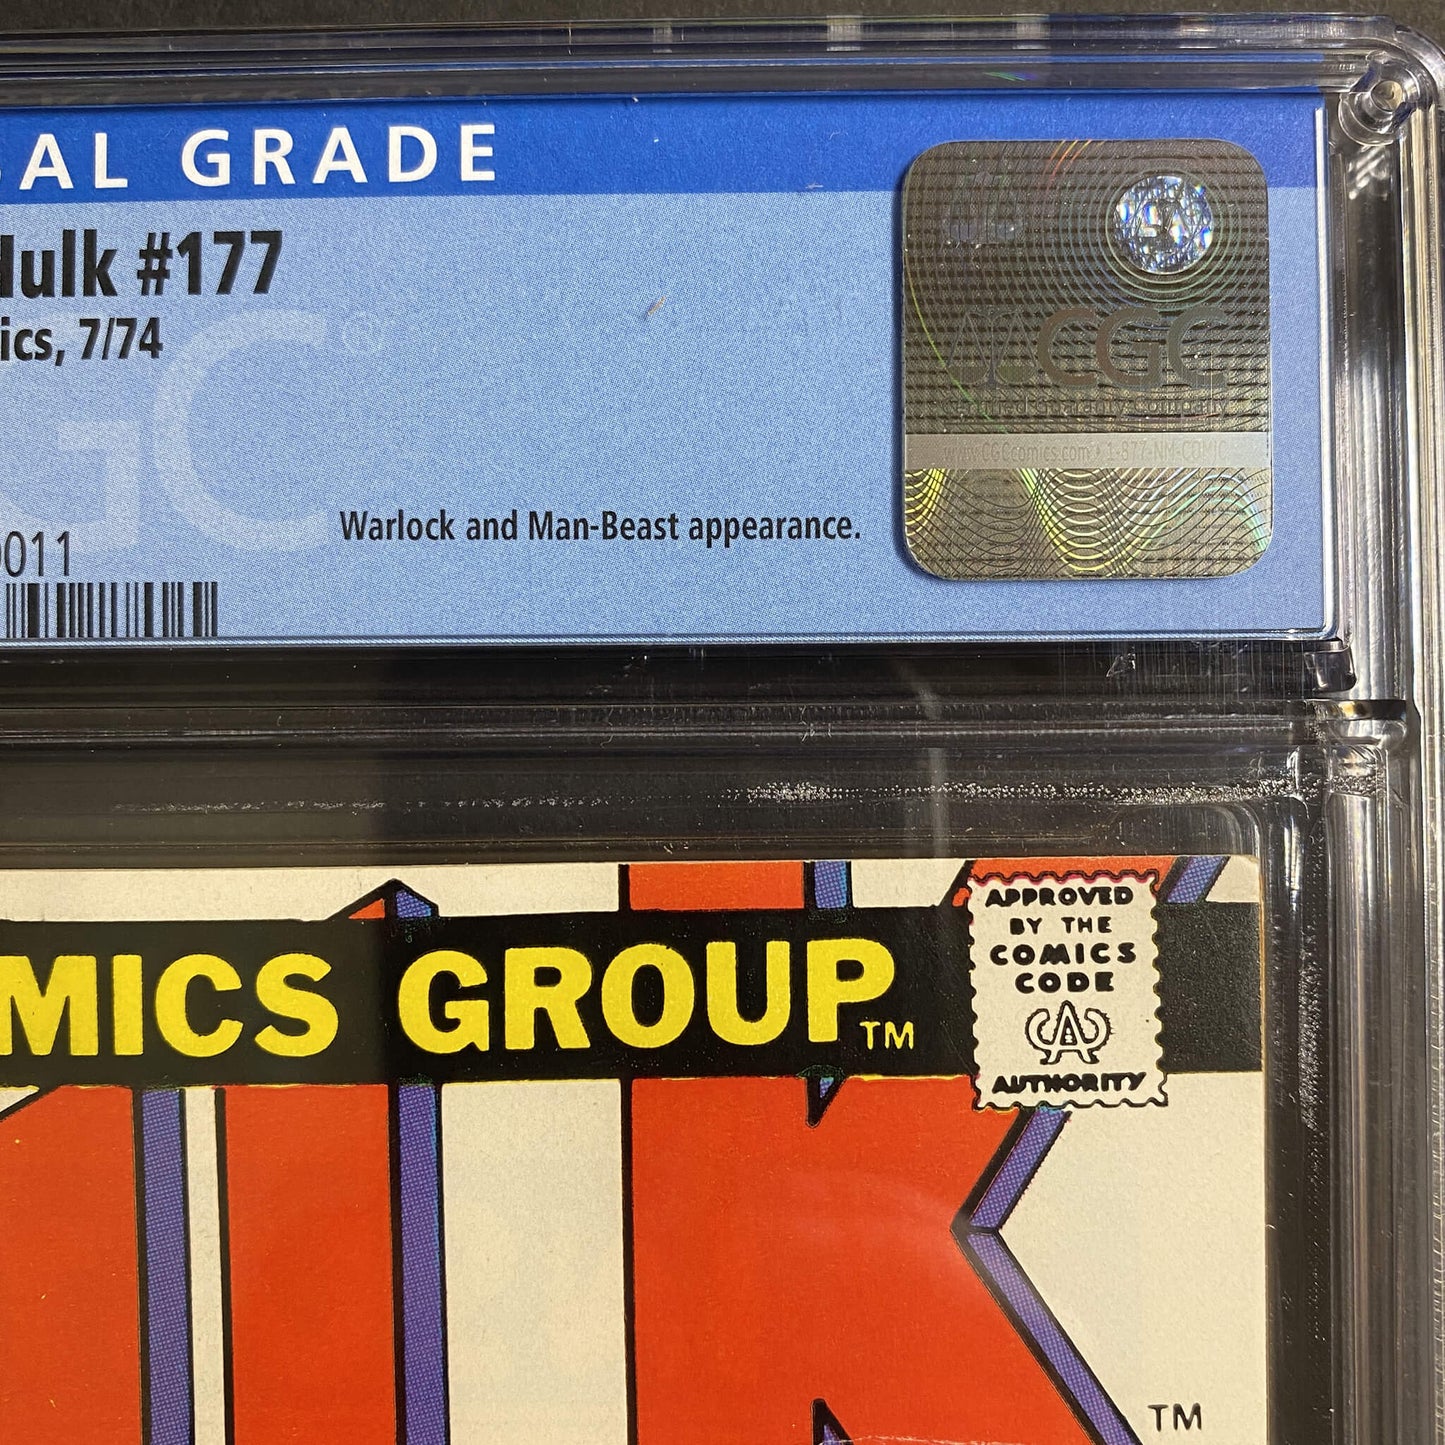 Incredible Hulk #177 | CGC 9.2 | 1974 | Warlock Cover